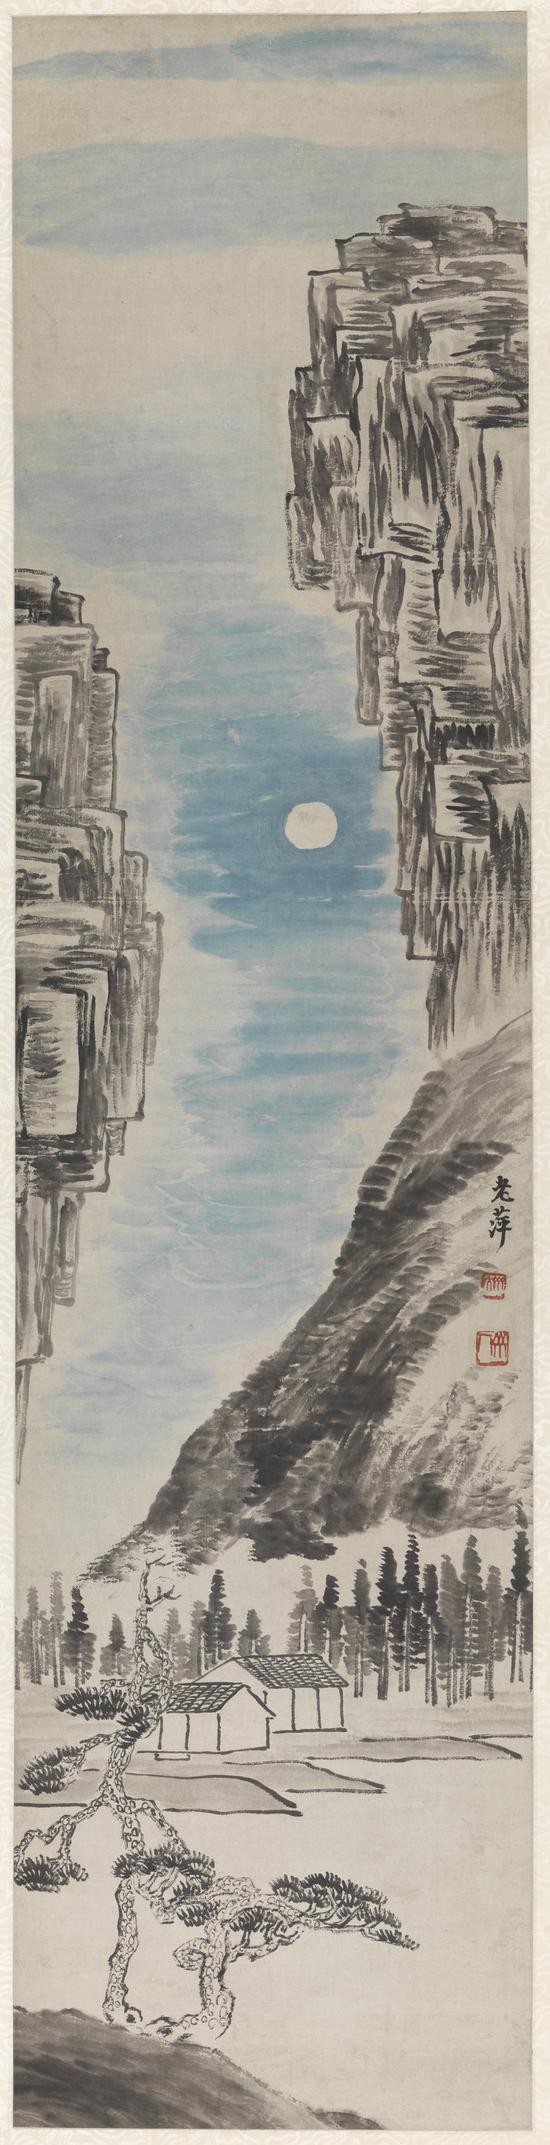 山水四季屏之秋 齐白石 1919年 132×32cm 轴 纸本设色 清华大学艺术博物馆藏